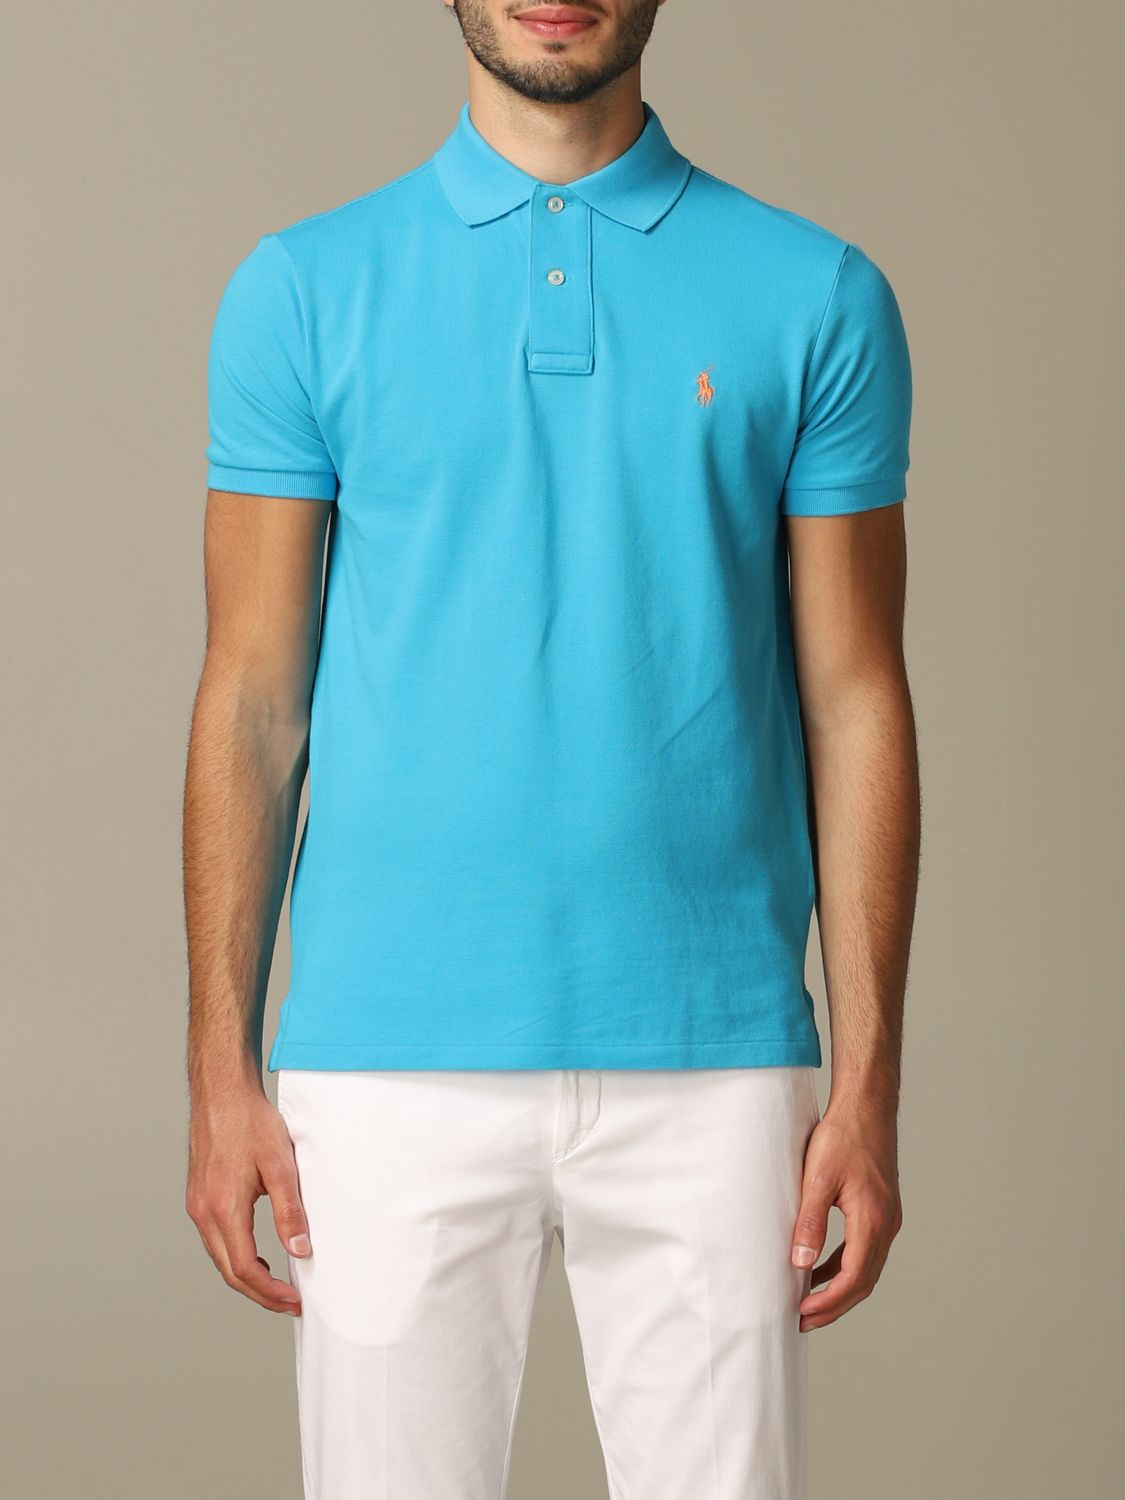 Polo Ralph Lauren polo shirt in honeycomb cotton | Polo Shirt Polo ...